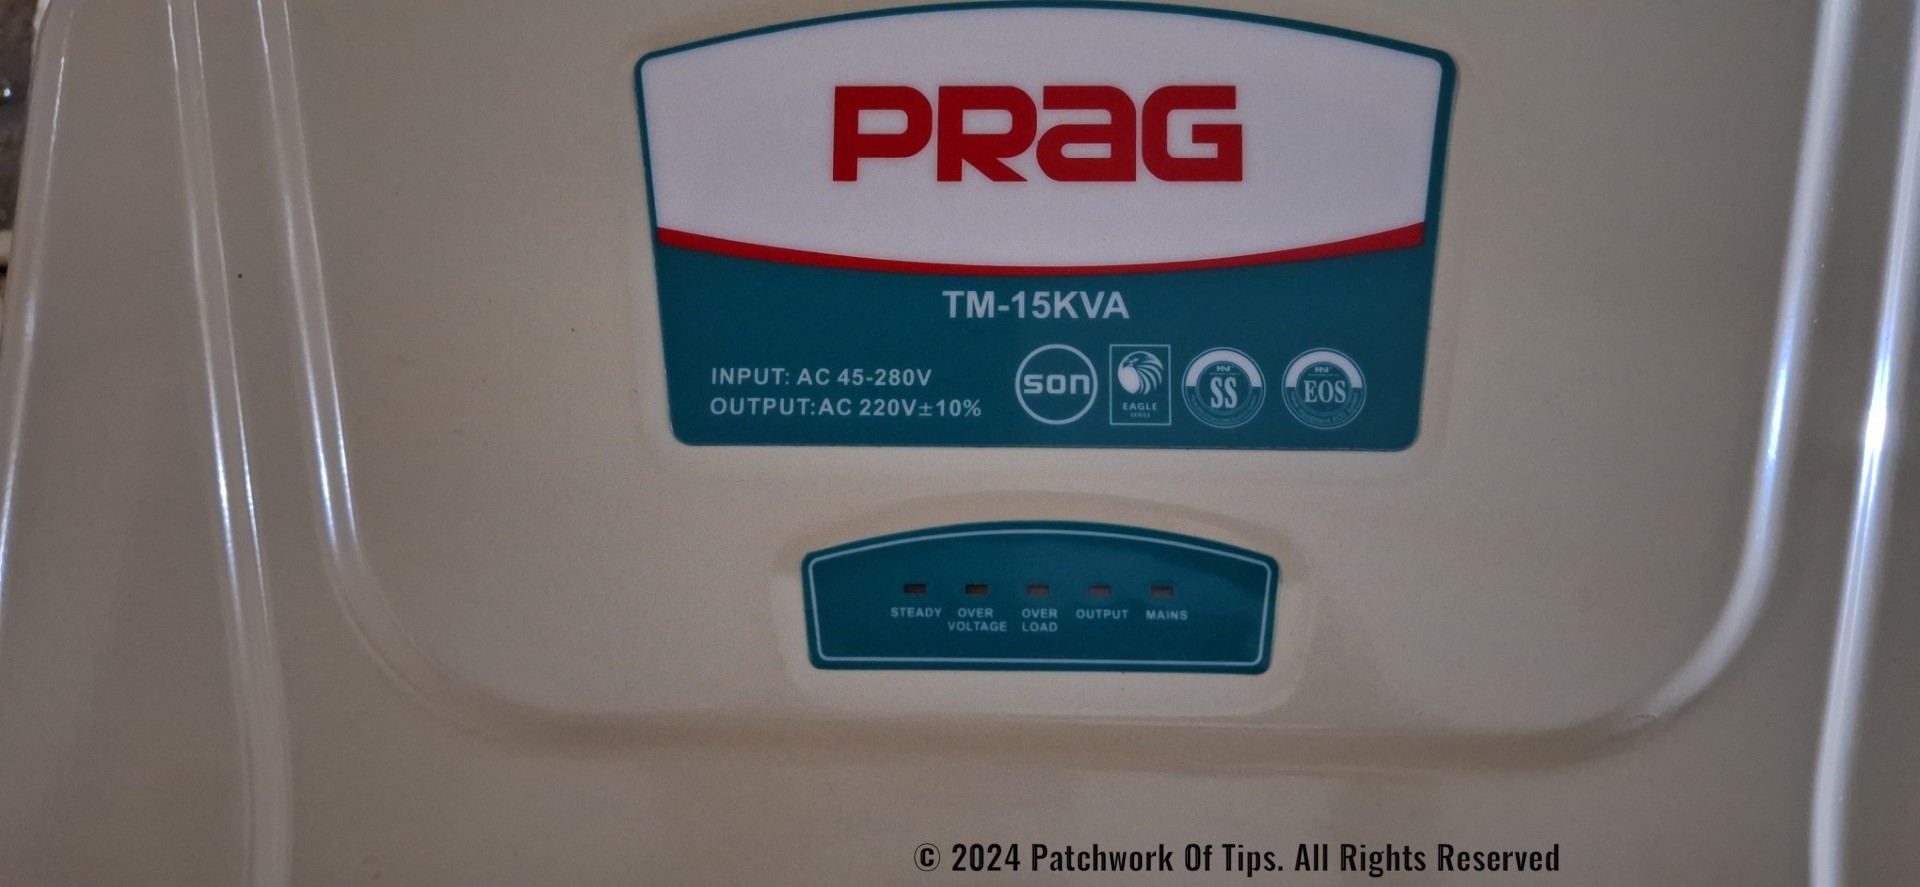 PRAG TM-15KVA Stabilizer Review 2